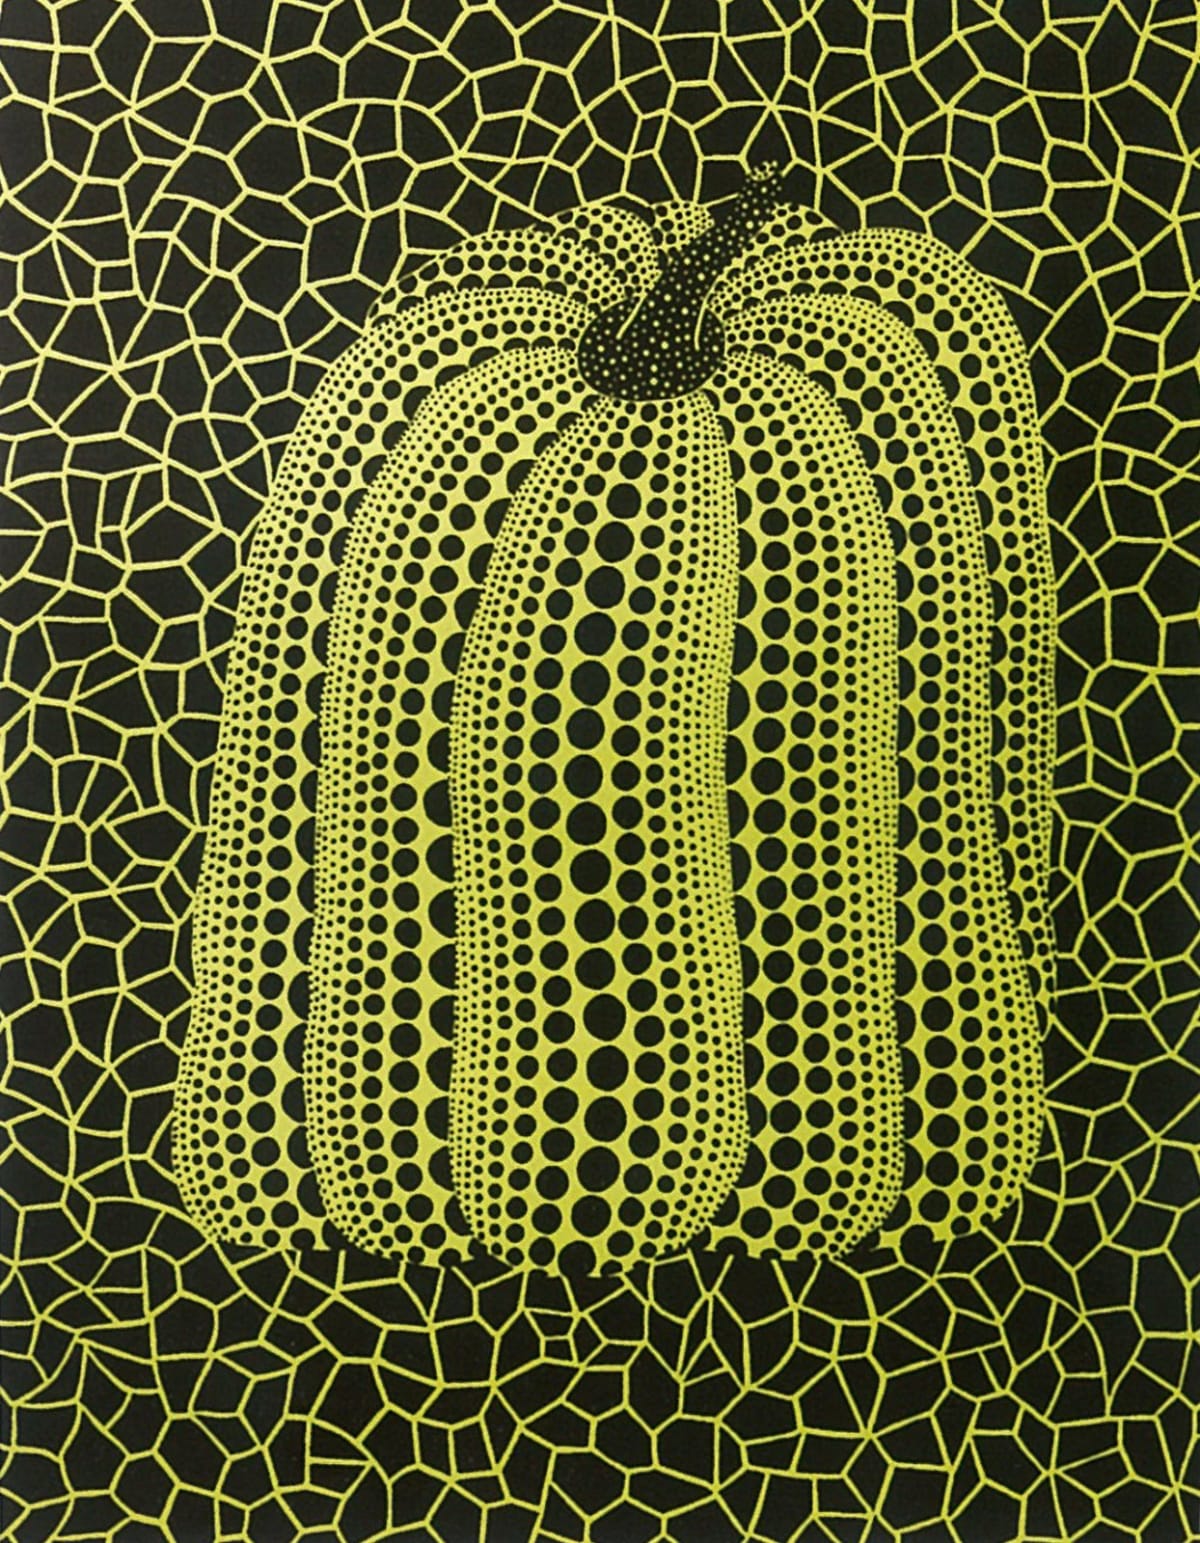 Yayoi Kusama, Pumpkin (G), 1992